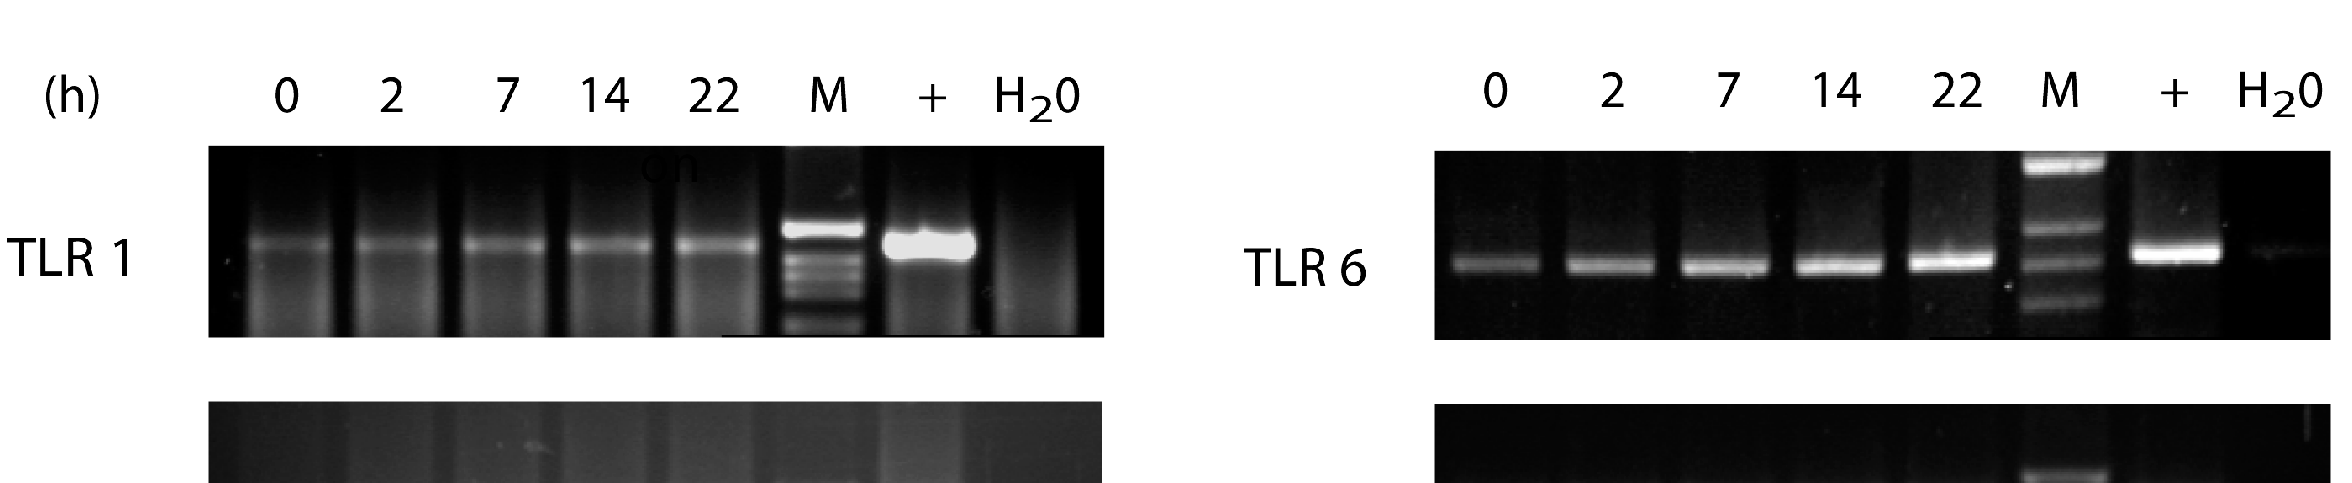 Ergebnisse Es zeigte sich ab 7 Stunden proinflammatorischer Stimulation mit TNFα eine Induktion des TLR1 mrna-expressionsniveaus.